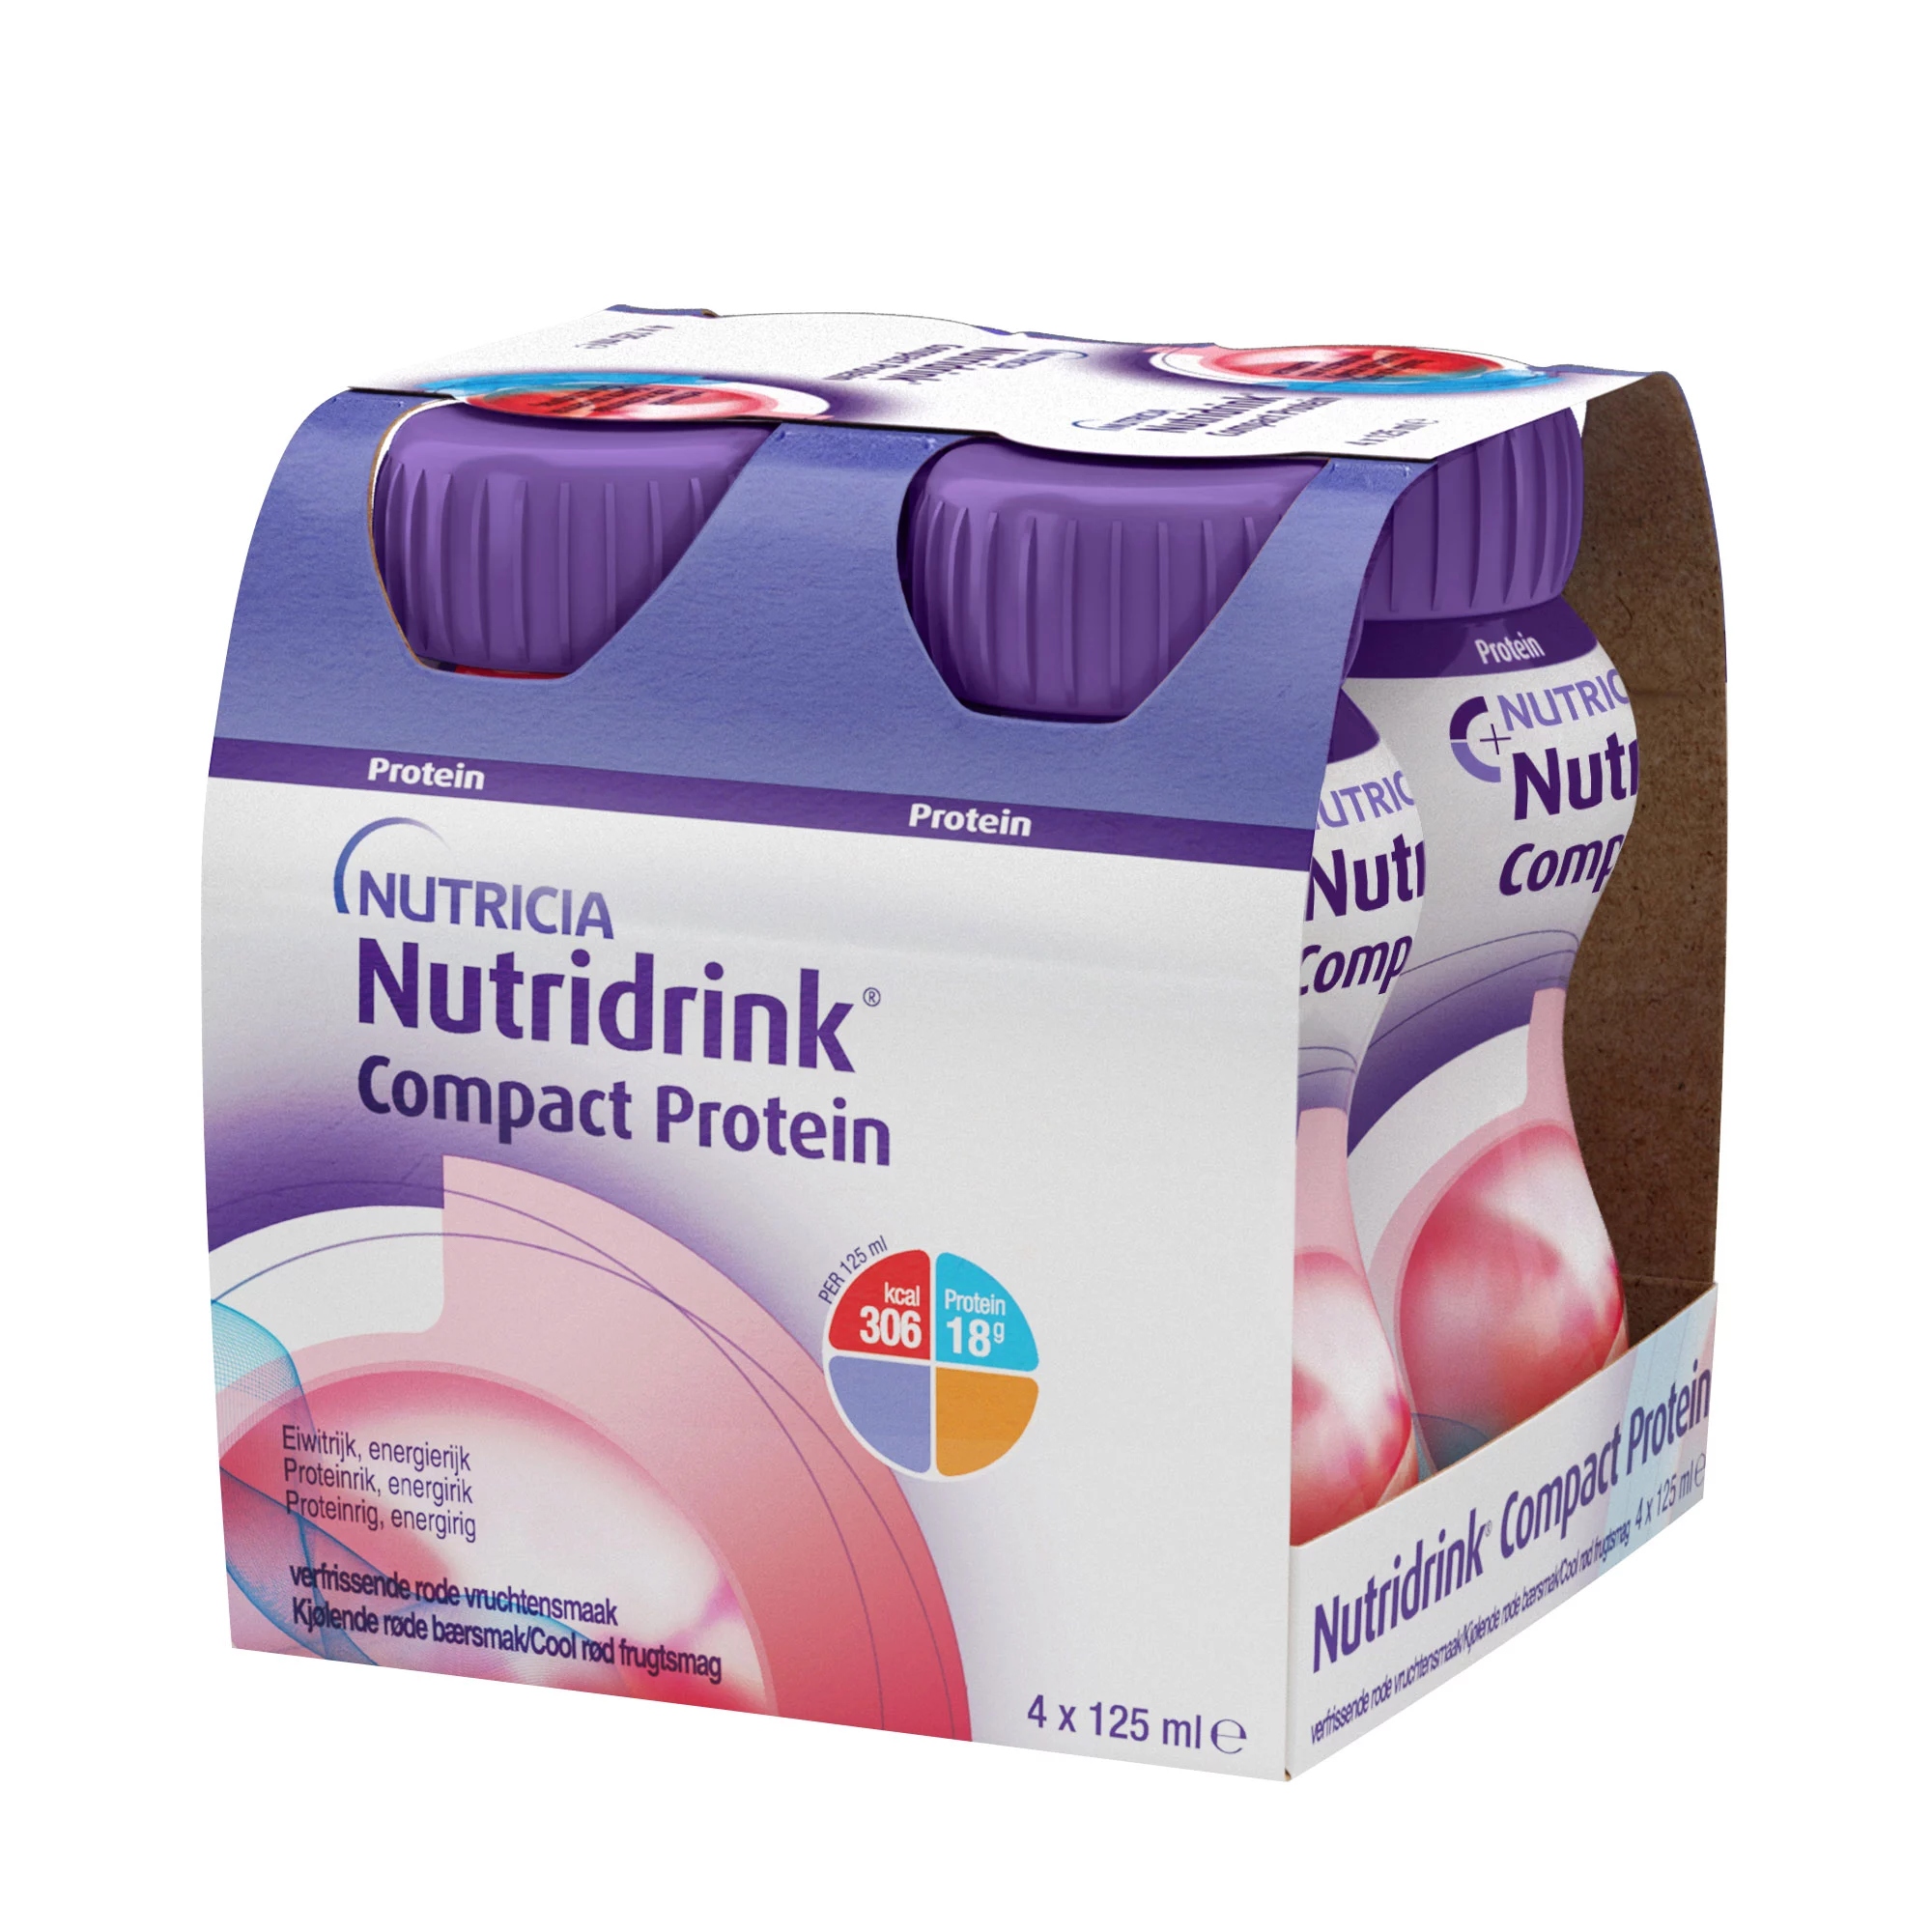 Нутридринк Компакт Протеин с охлаждающим фруктово-ягодным вкусом